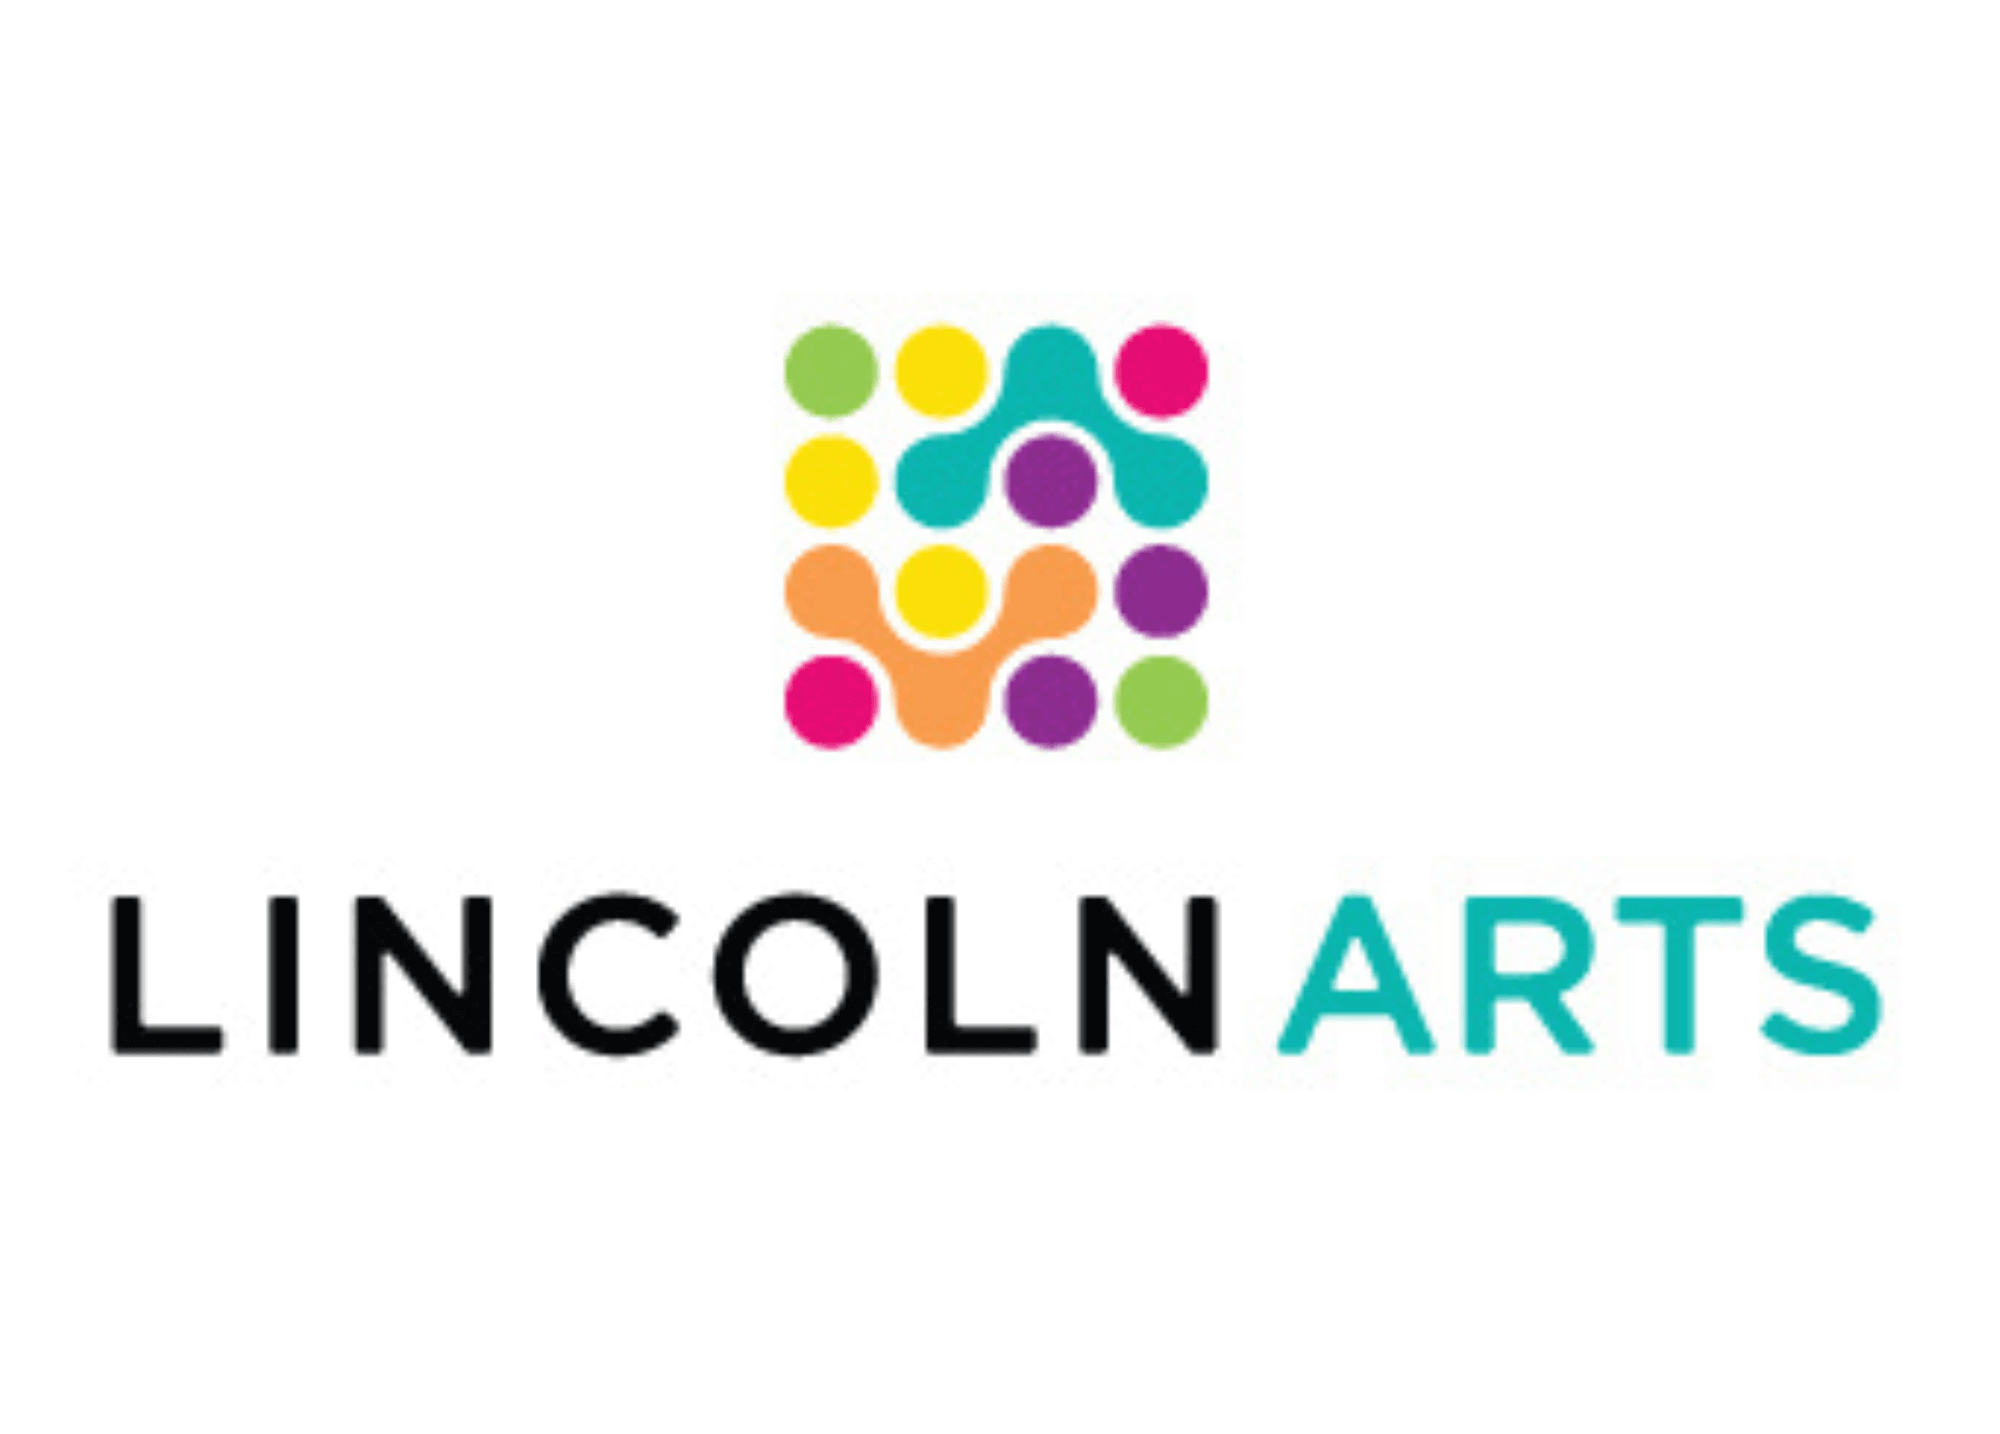 Lincoln Arts Council